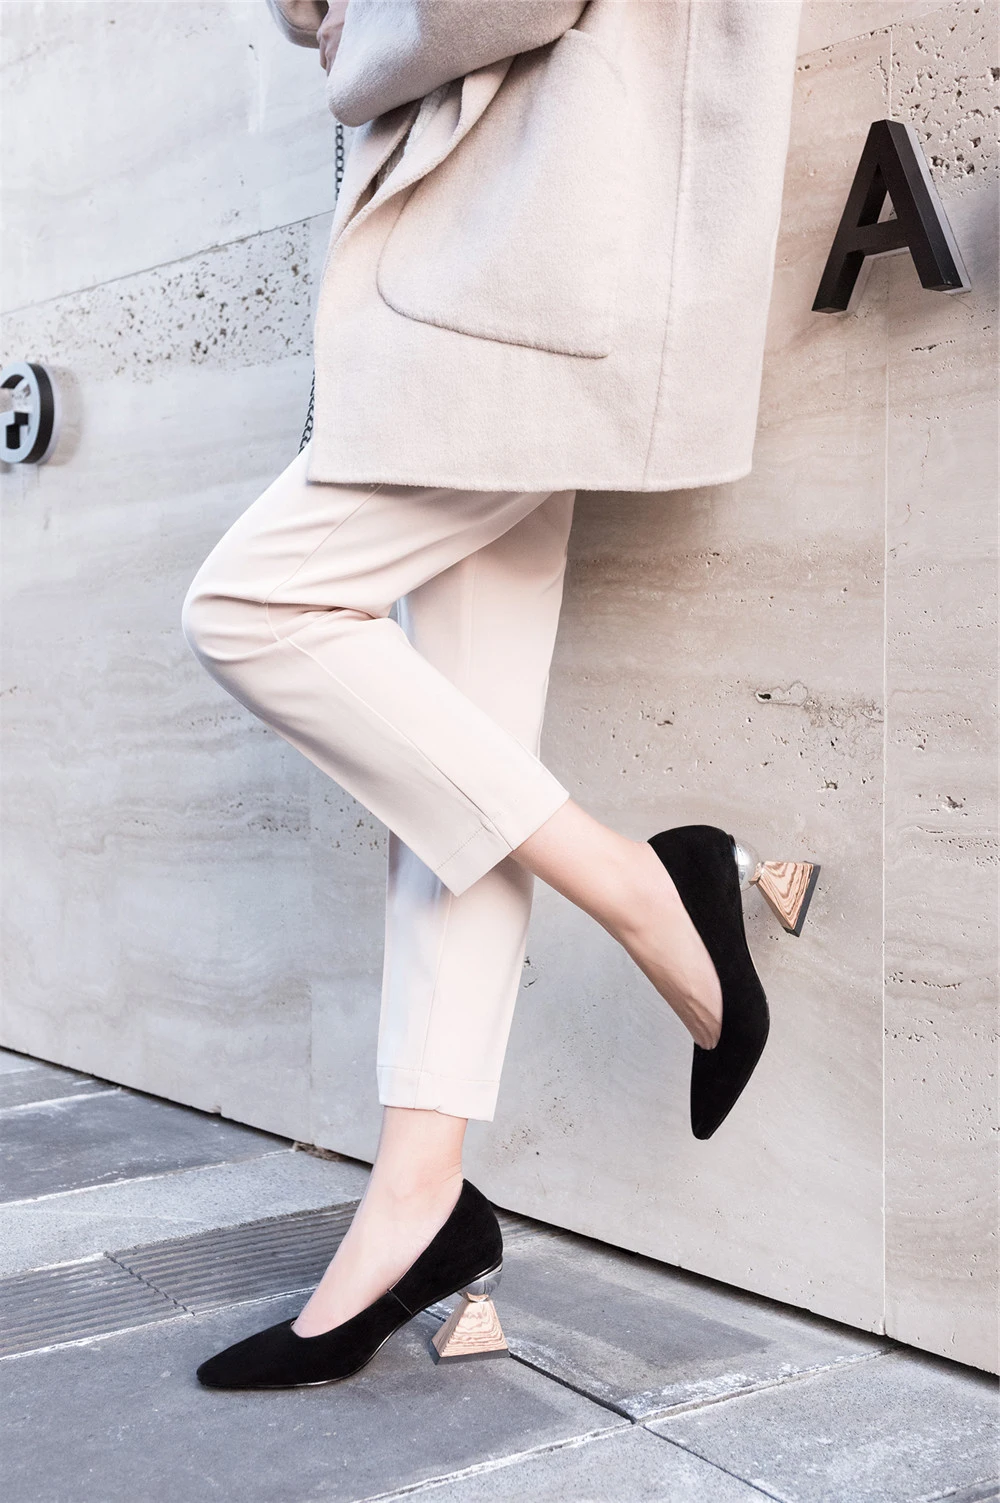 Необычные туфли-лодочки из натуральной кожи на высоком каблуке 7 см; модная офисная женская обувь; треугольный рисунок под дерево; Цвет абрикосовый; MMS01 muyisxi